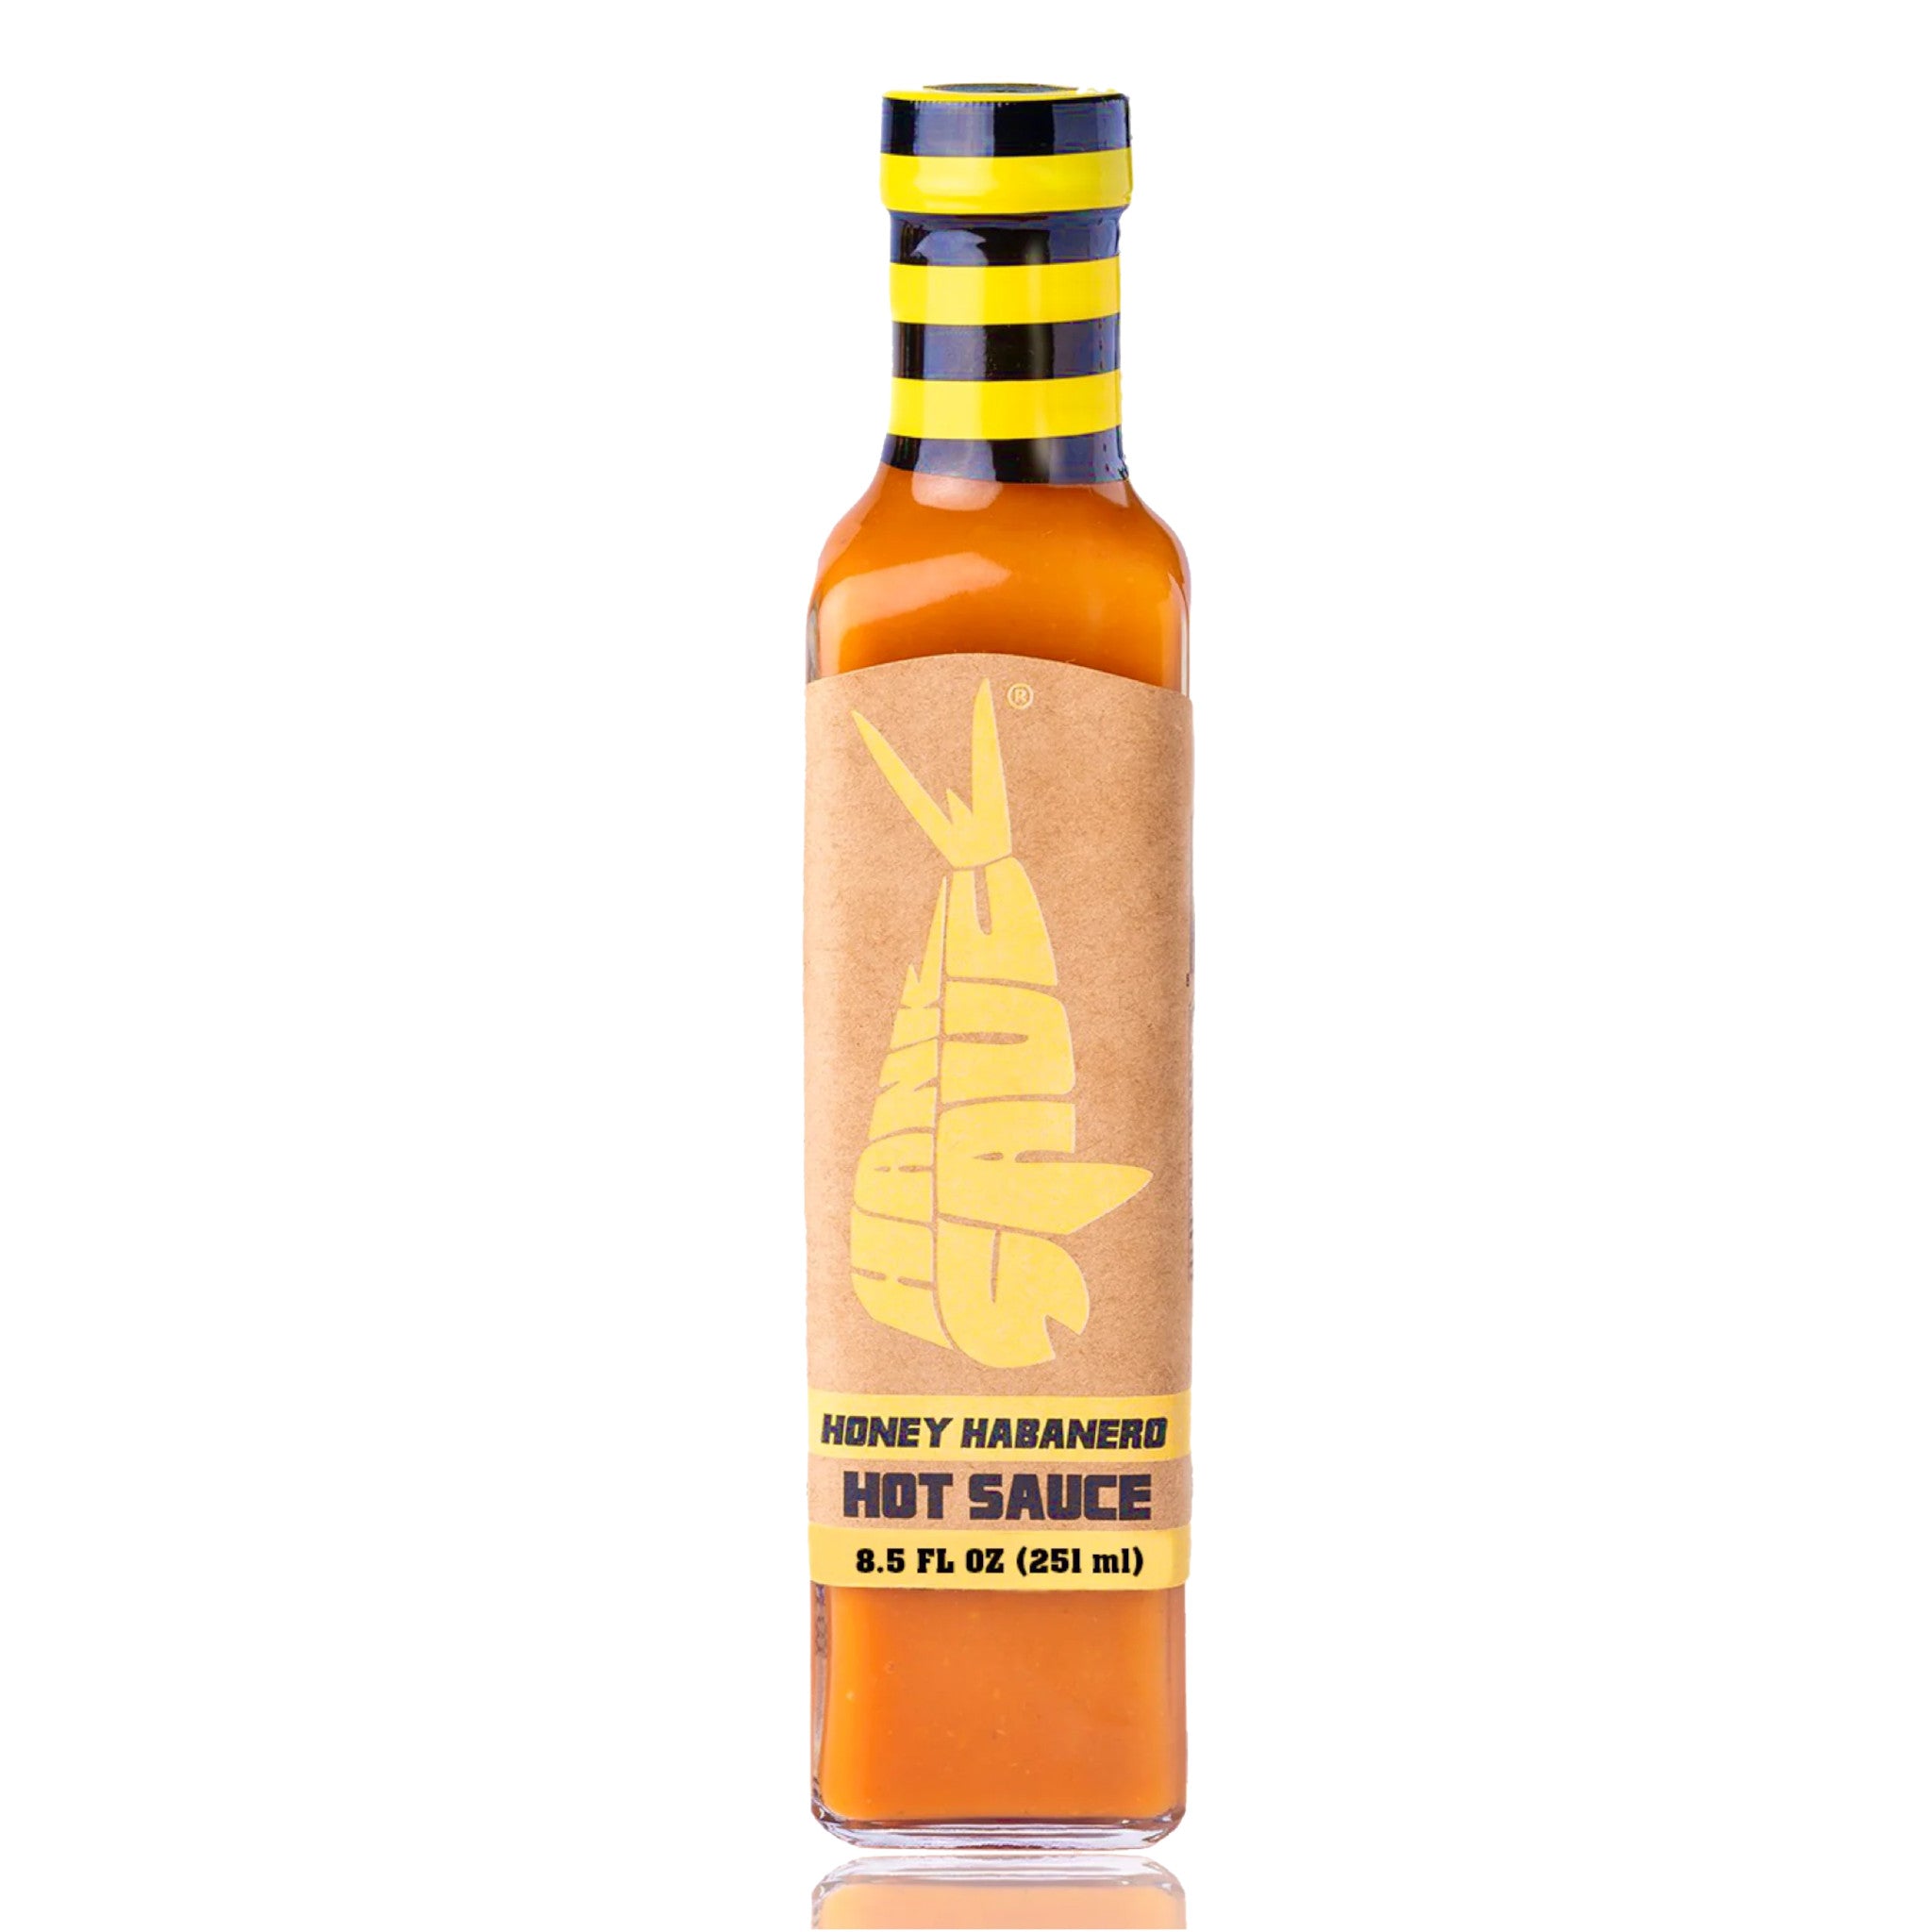 Honey Habanero Hot Sauce